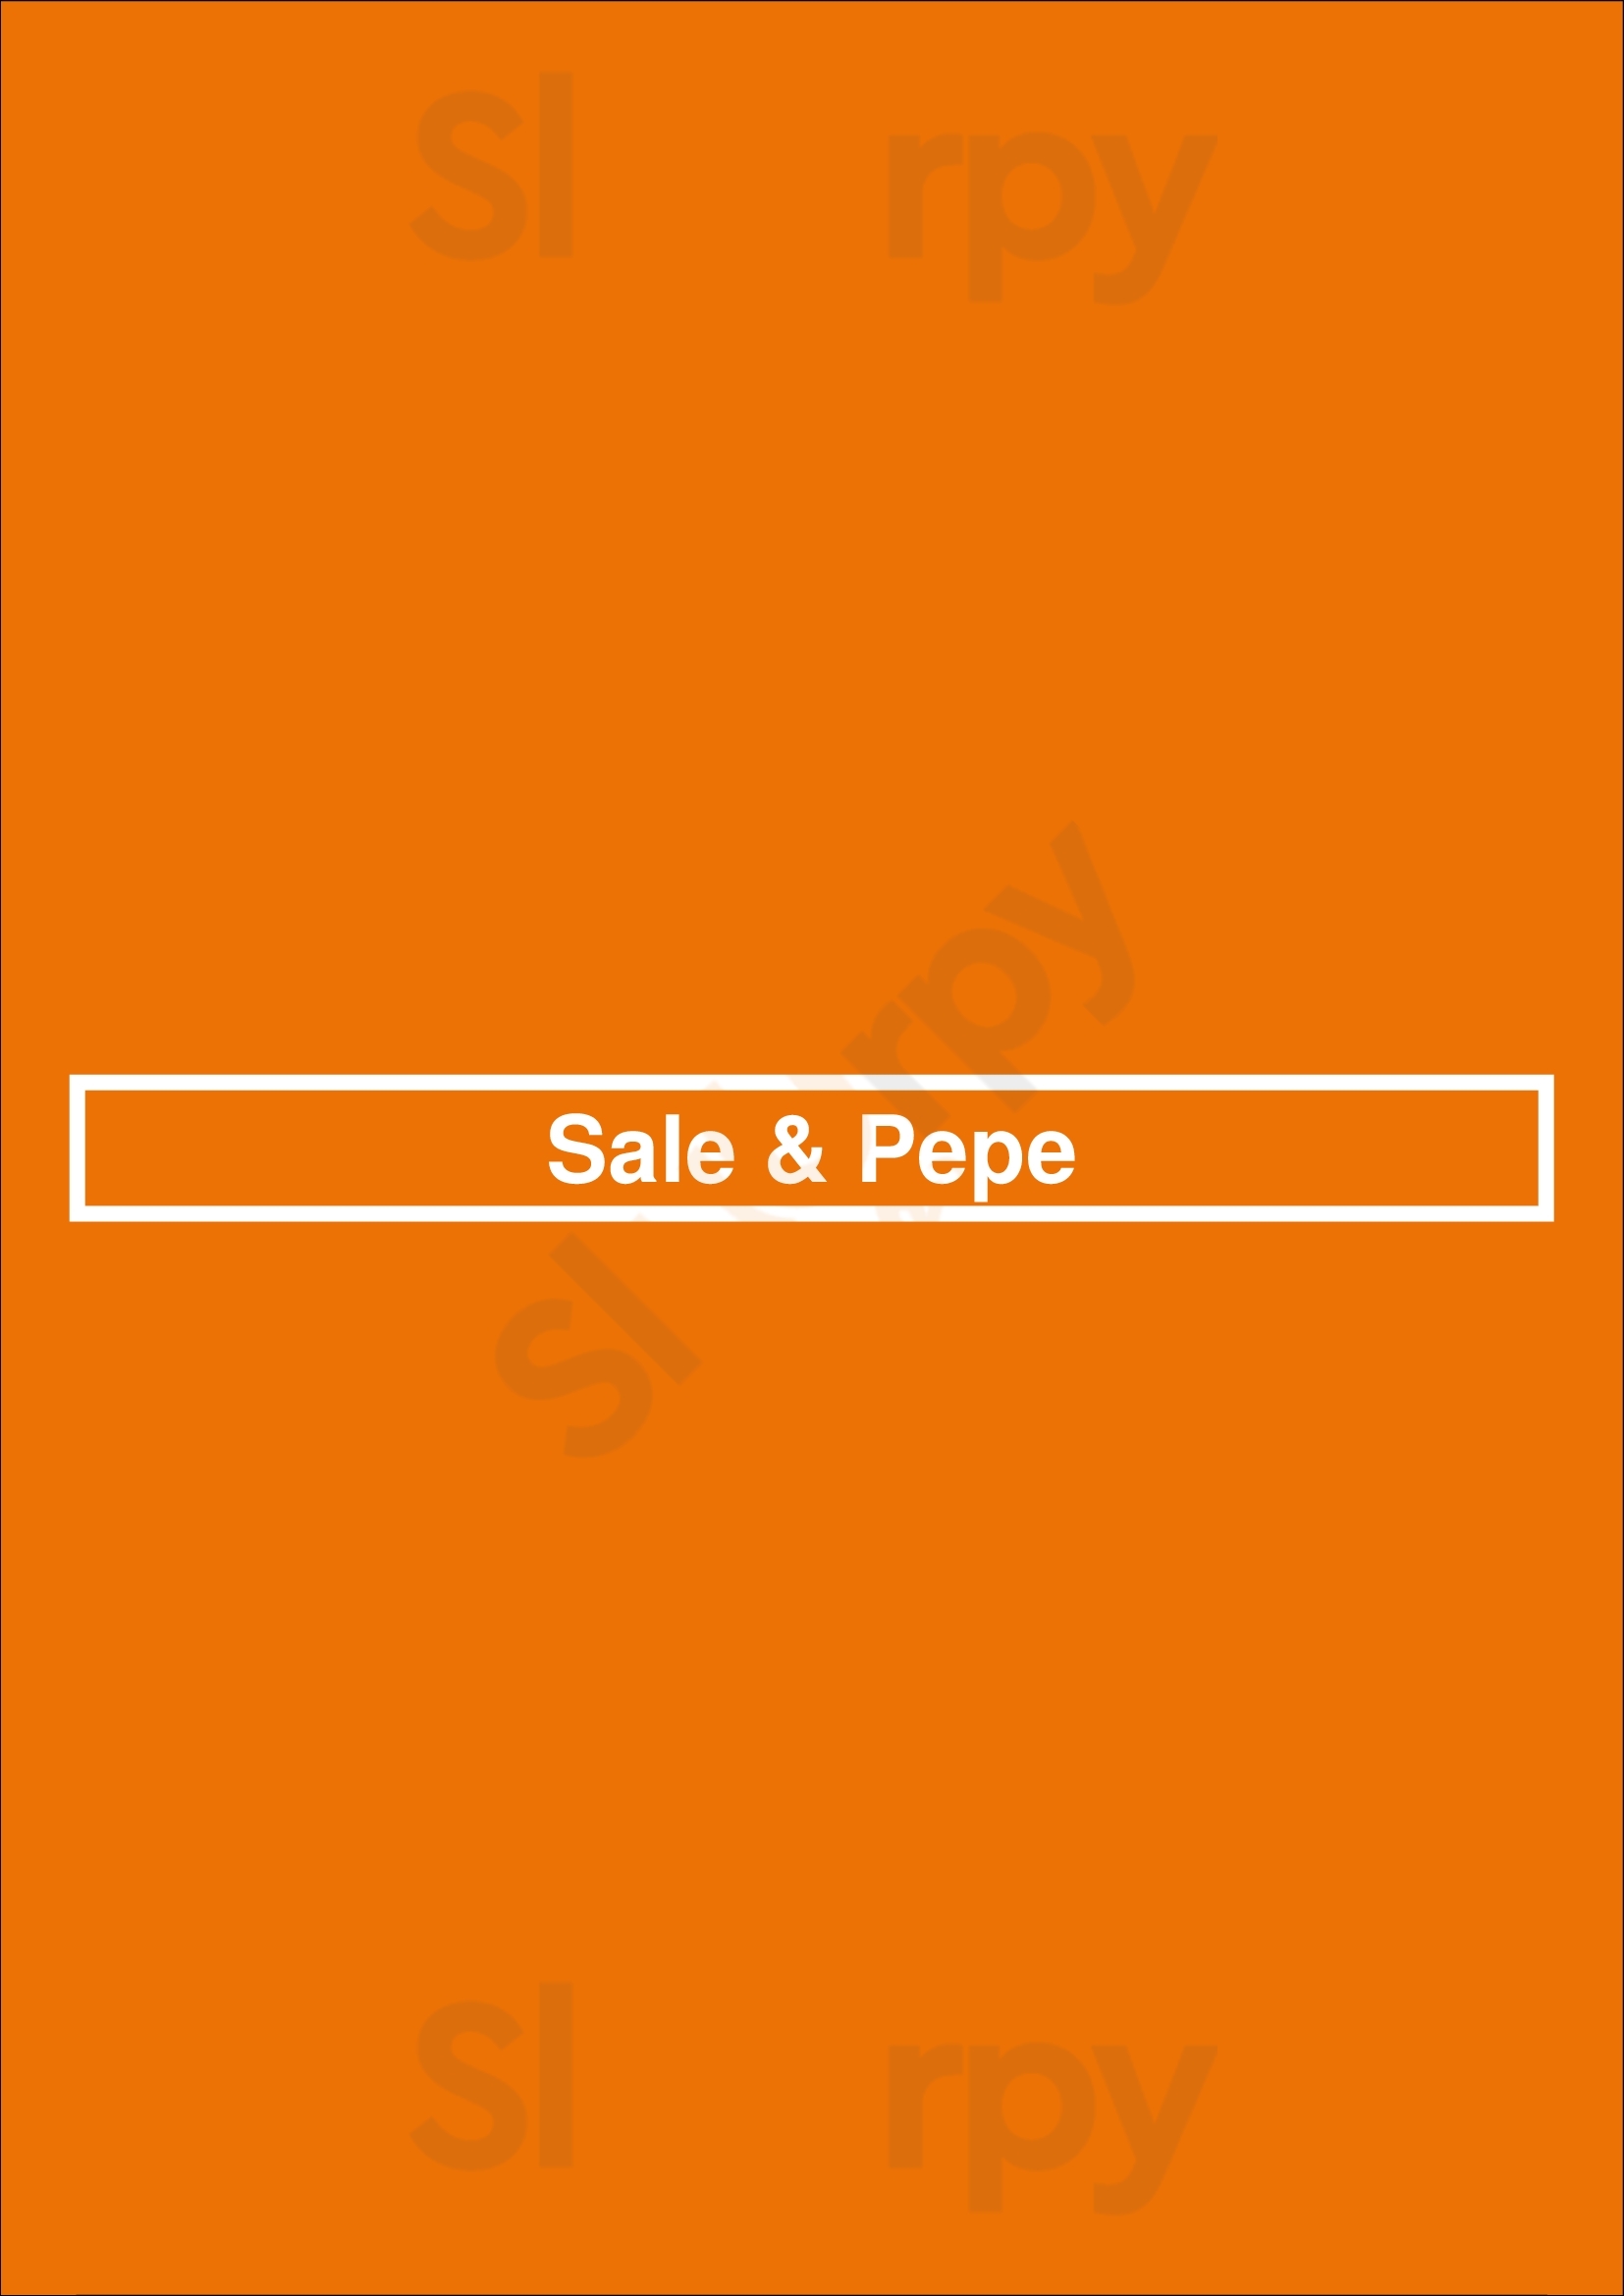 Sale & Pepe São Paulo Menu - 1